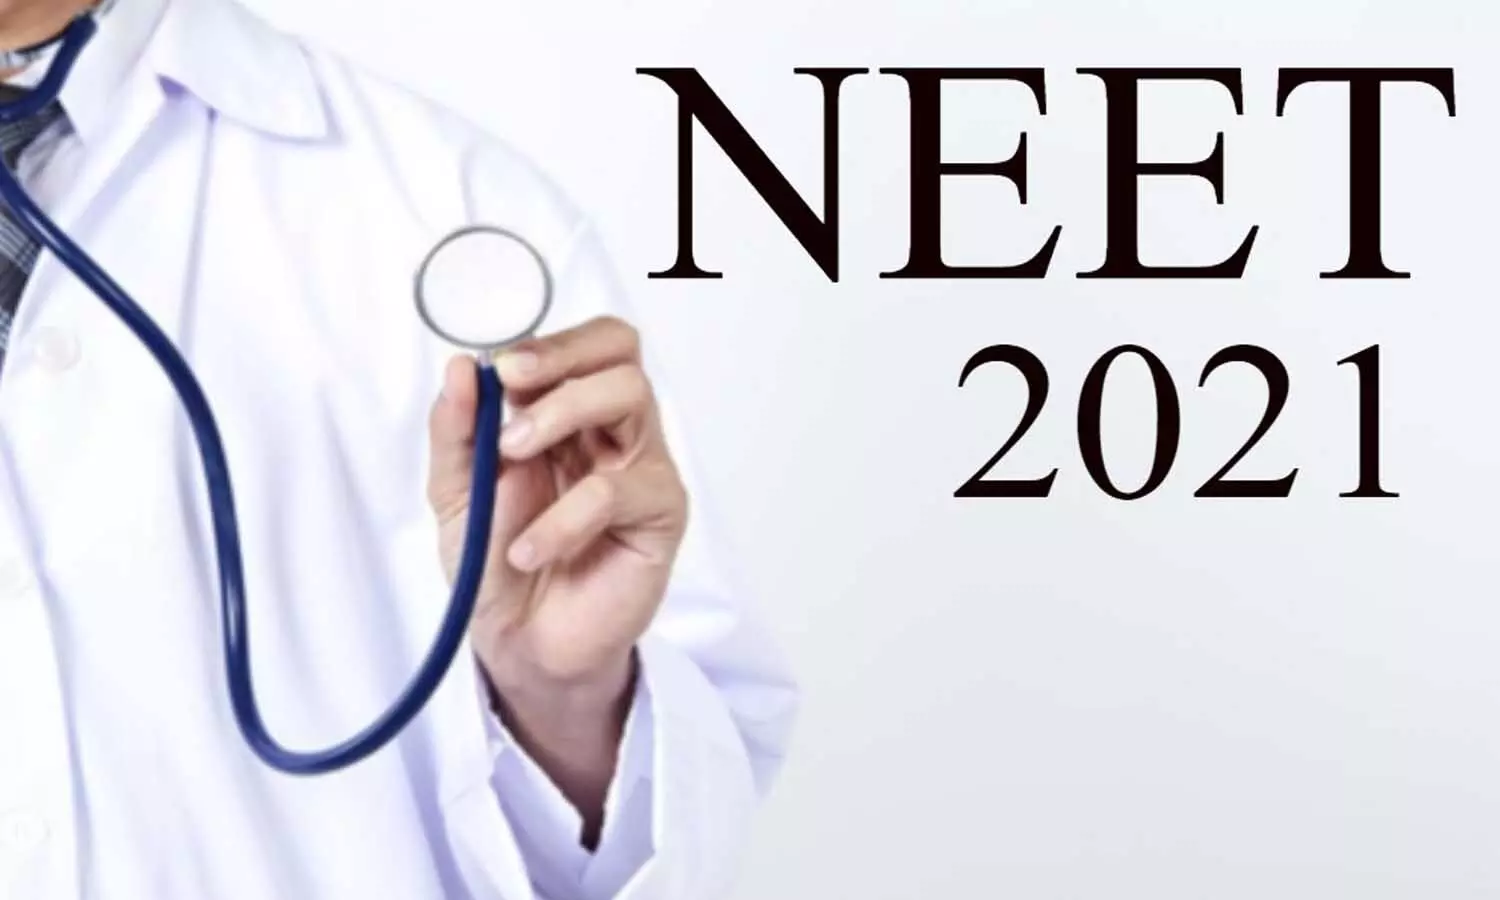 NEET PG 2021: सितंबर में होगी नीट पीजी की परीक्षा, स्वास्थ्य मंत्री ने किया एलान